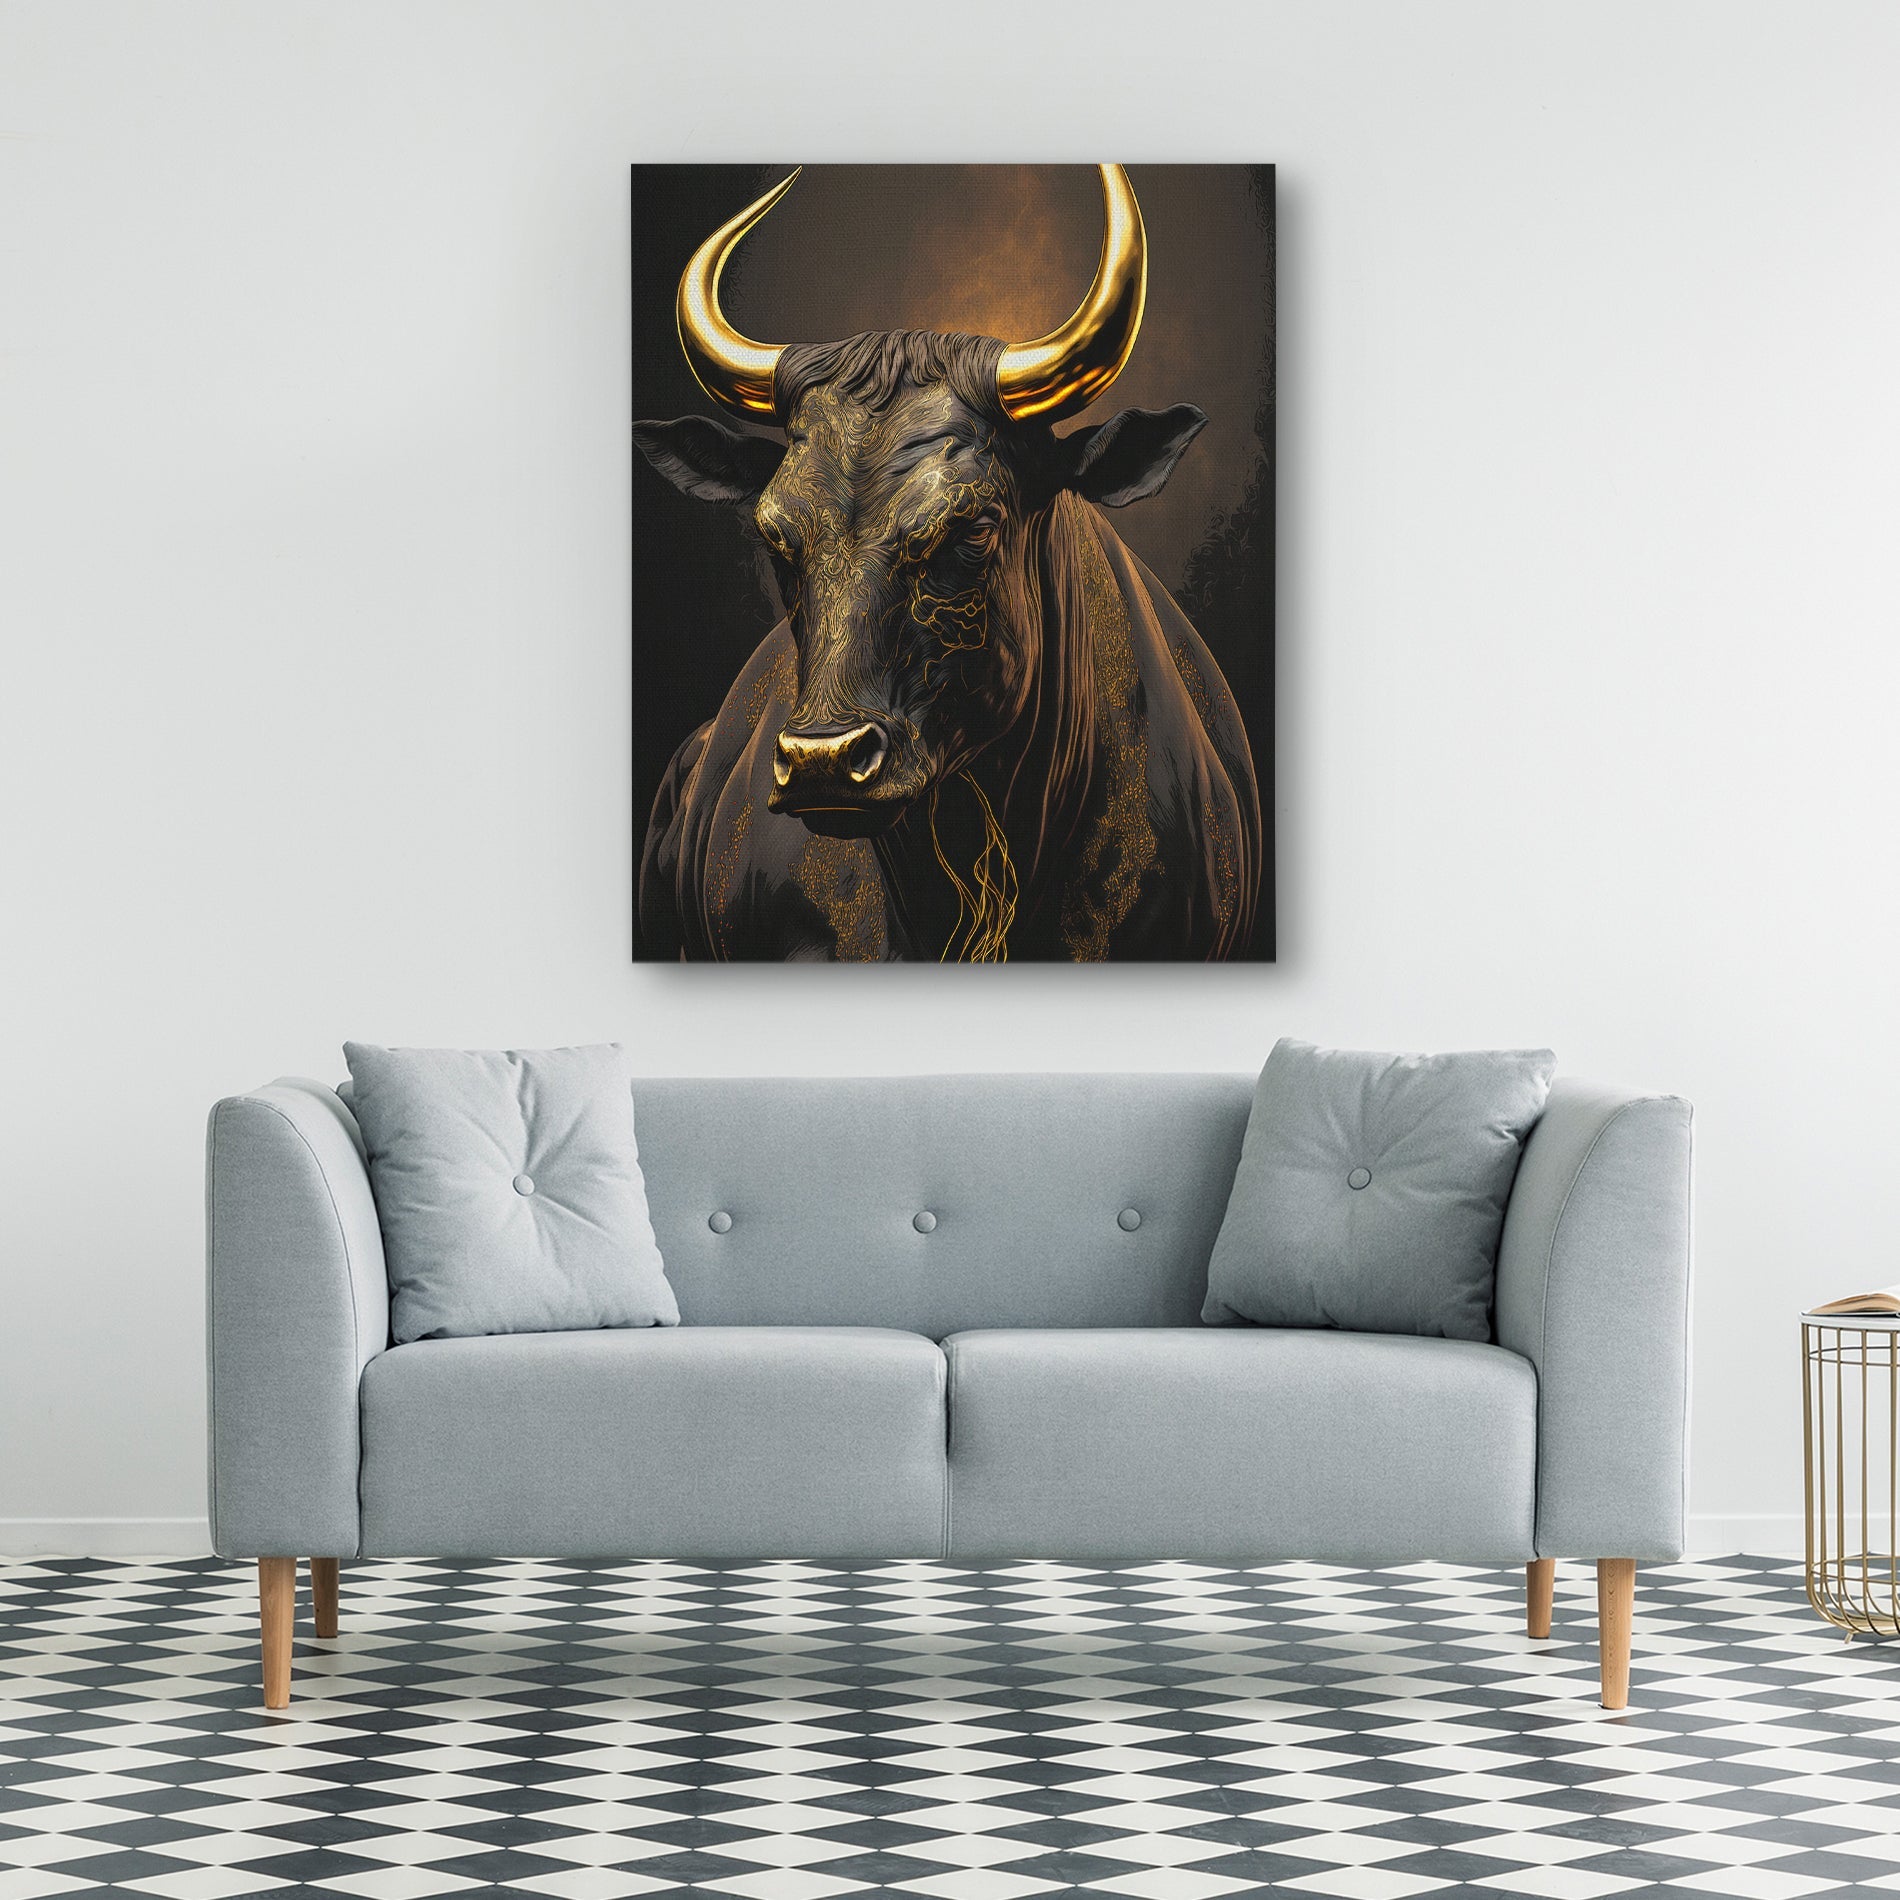 Standing Bull - Luxury Wall Art